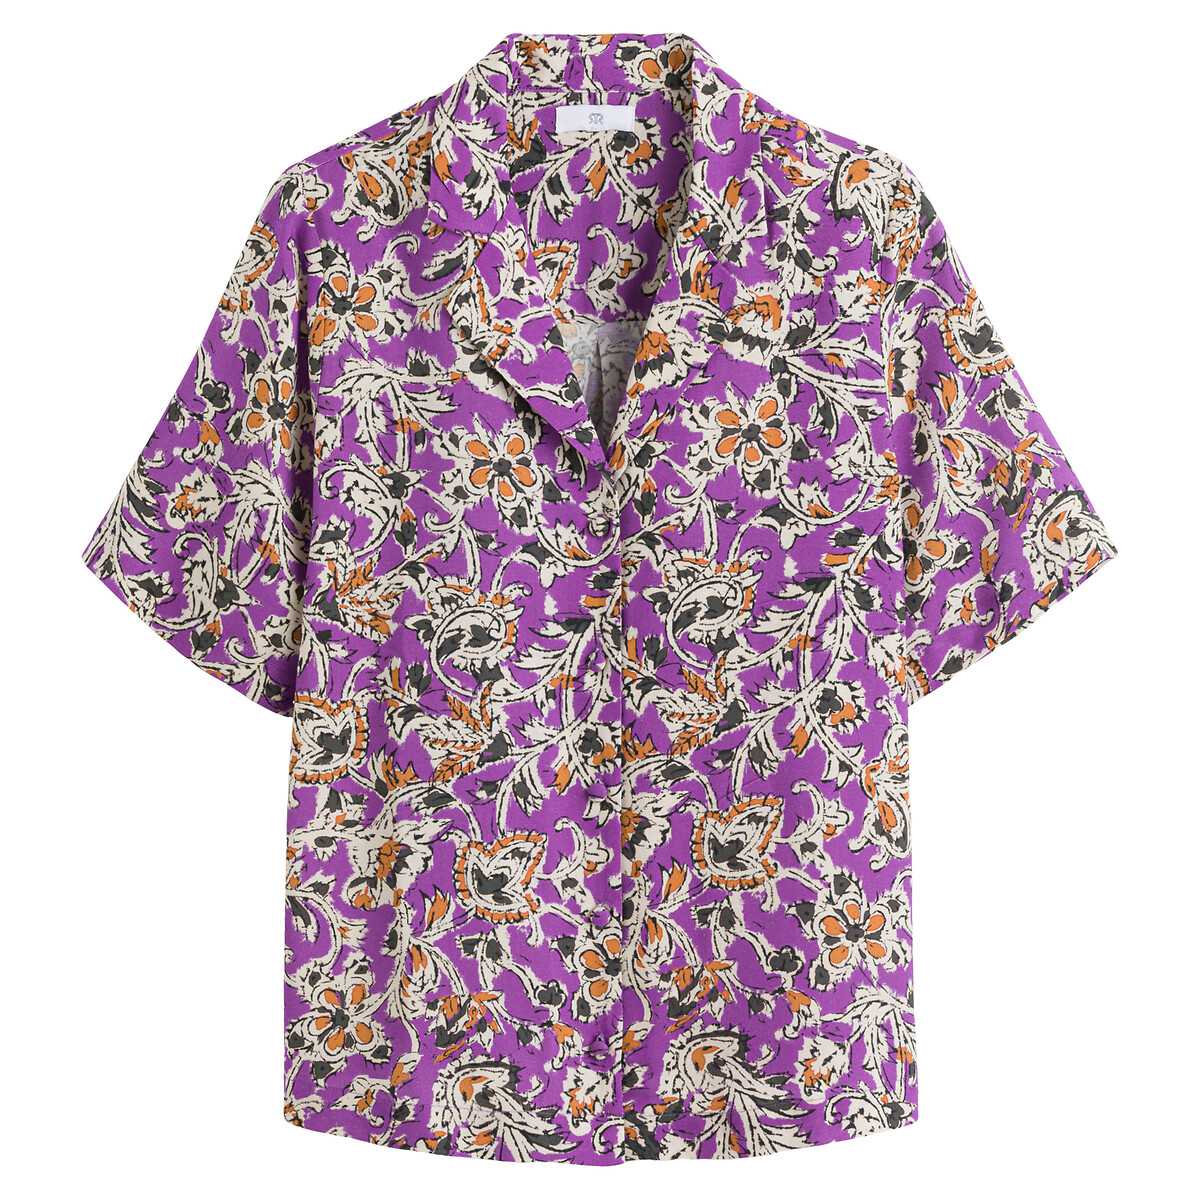 Рубашка С принтом и короткими рукавами 46 (FR) - 52 (RUS) фиолетовый LaRedoute, размер 46 (FR) - 52 (RUS) Рубашка С принтом и короткими рукавами 46 (FR) - 52 (RUS) фиолетовый - фото 5